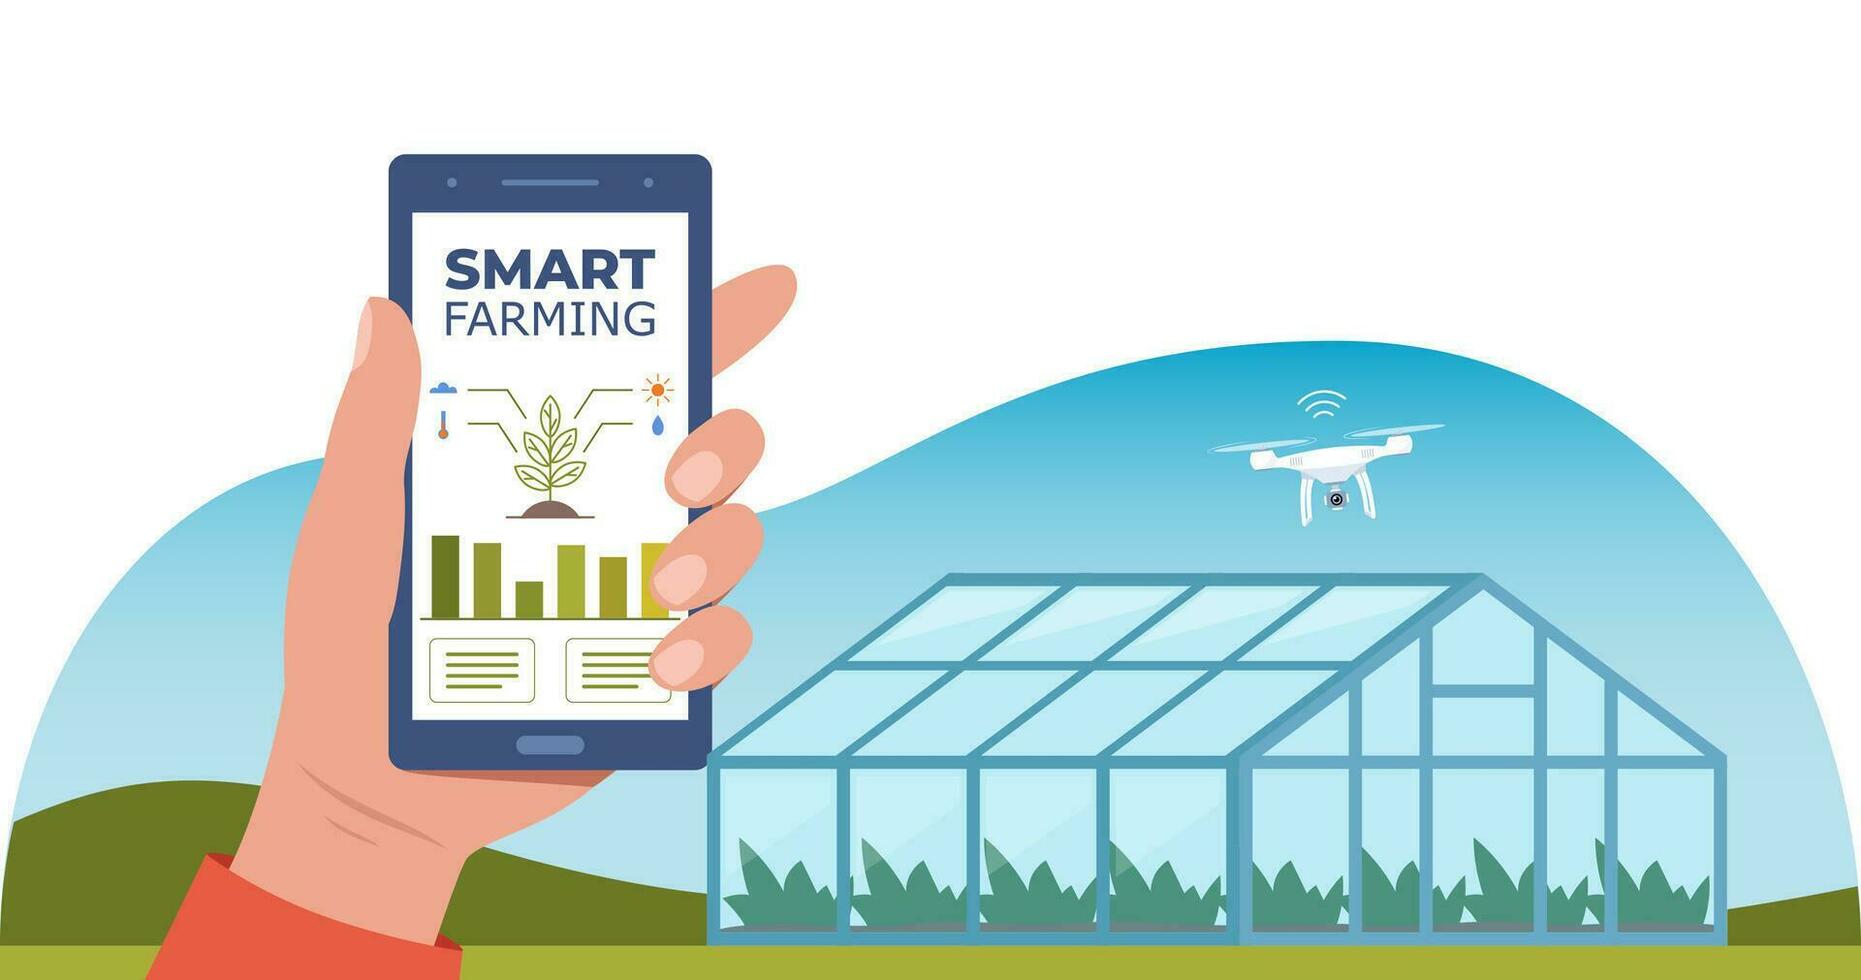 slim landbouw, futuristische technologieën in boerderij industrie. smartphone met app voor controle planten groeien, drone, agrarisch automatisering. kas Aan achtergrond. vector illustratie.